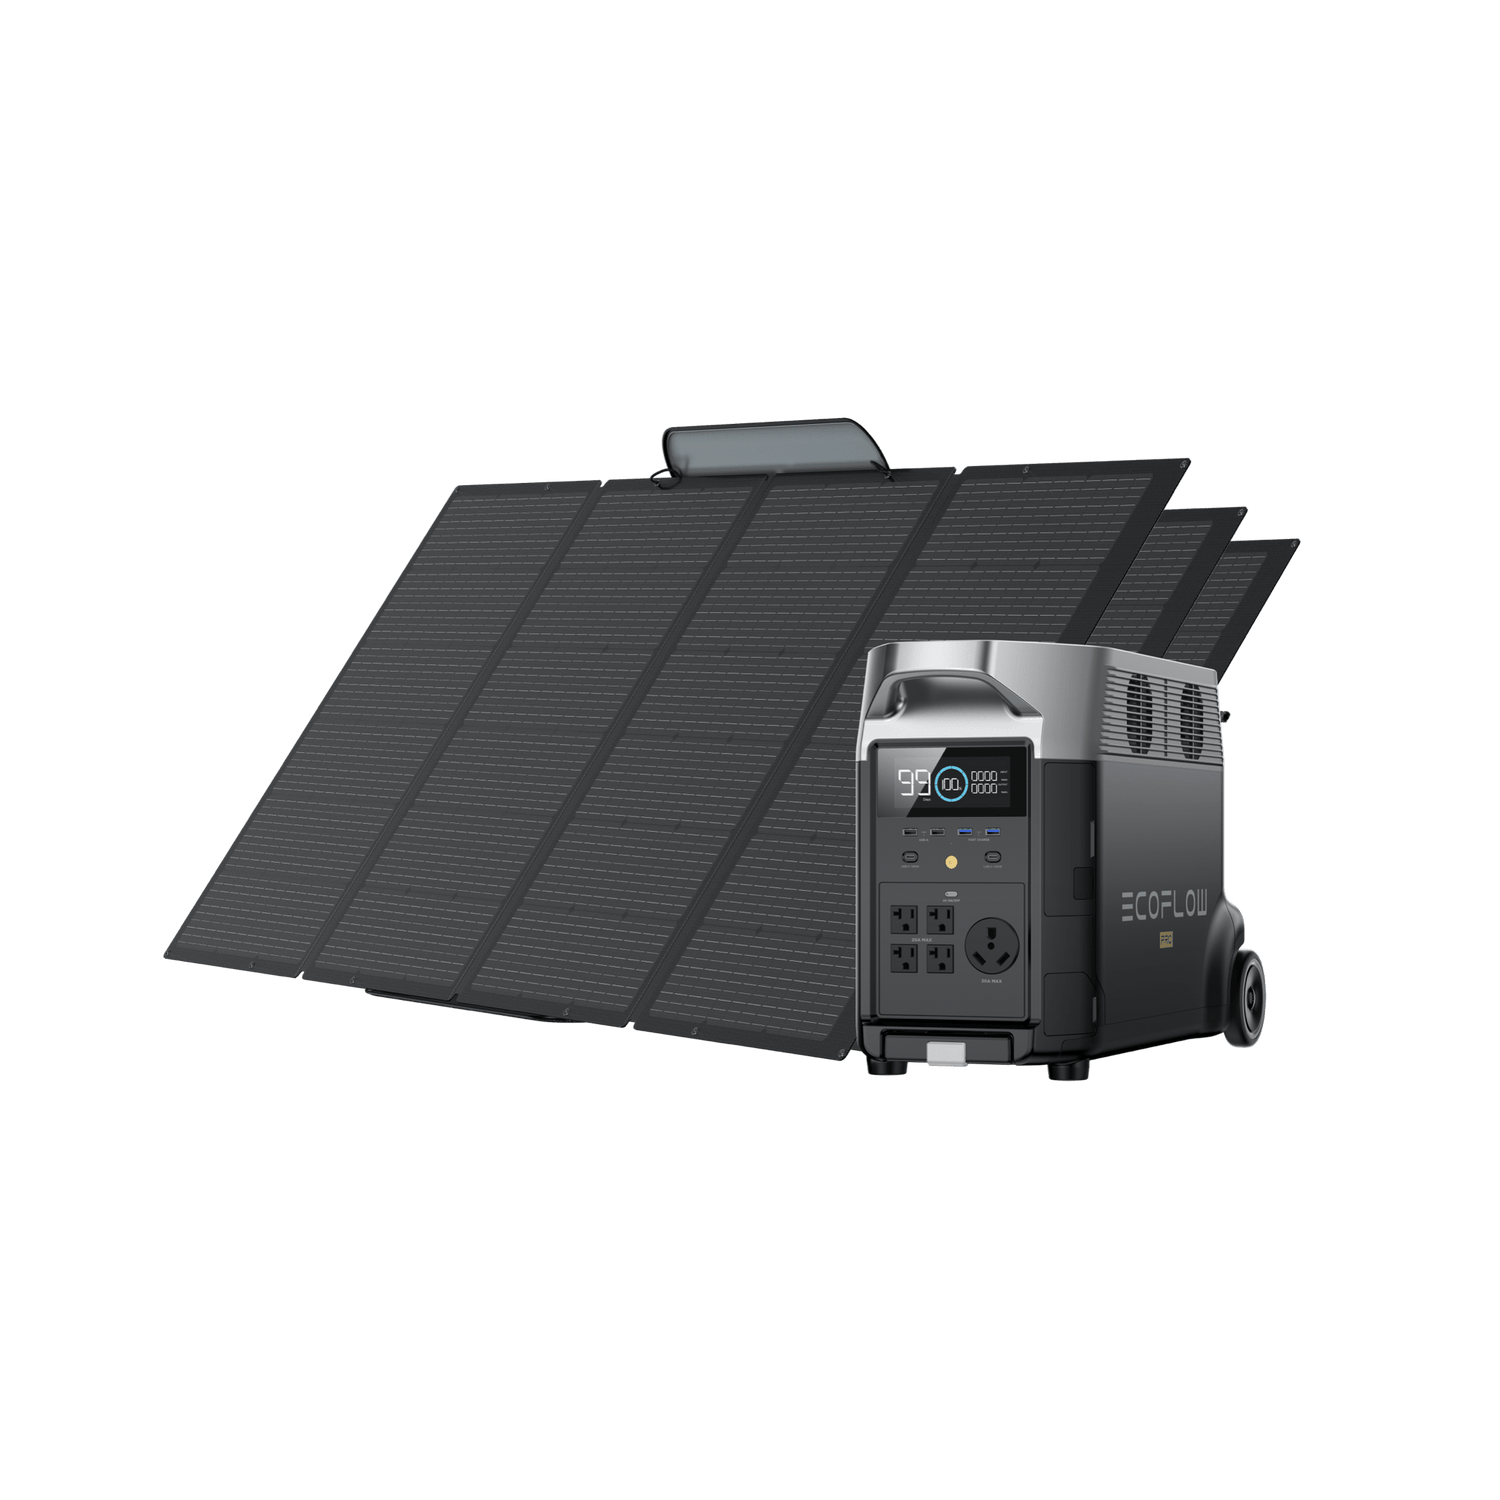 EcoFlow Delta 2 Max Solar Generator - Pro Tool Reviews